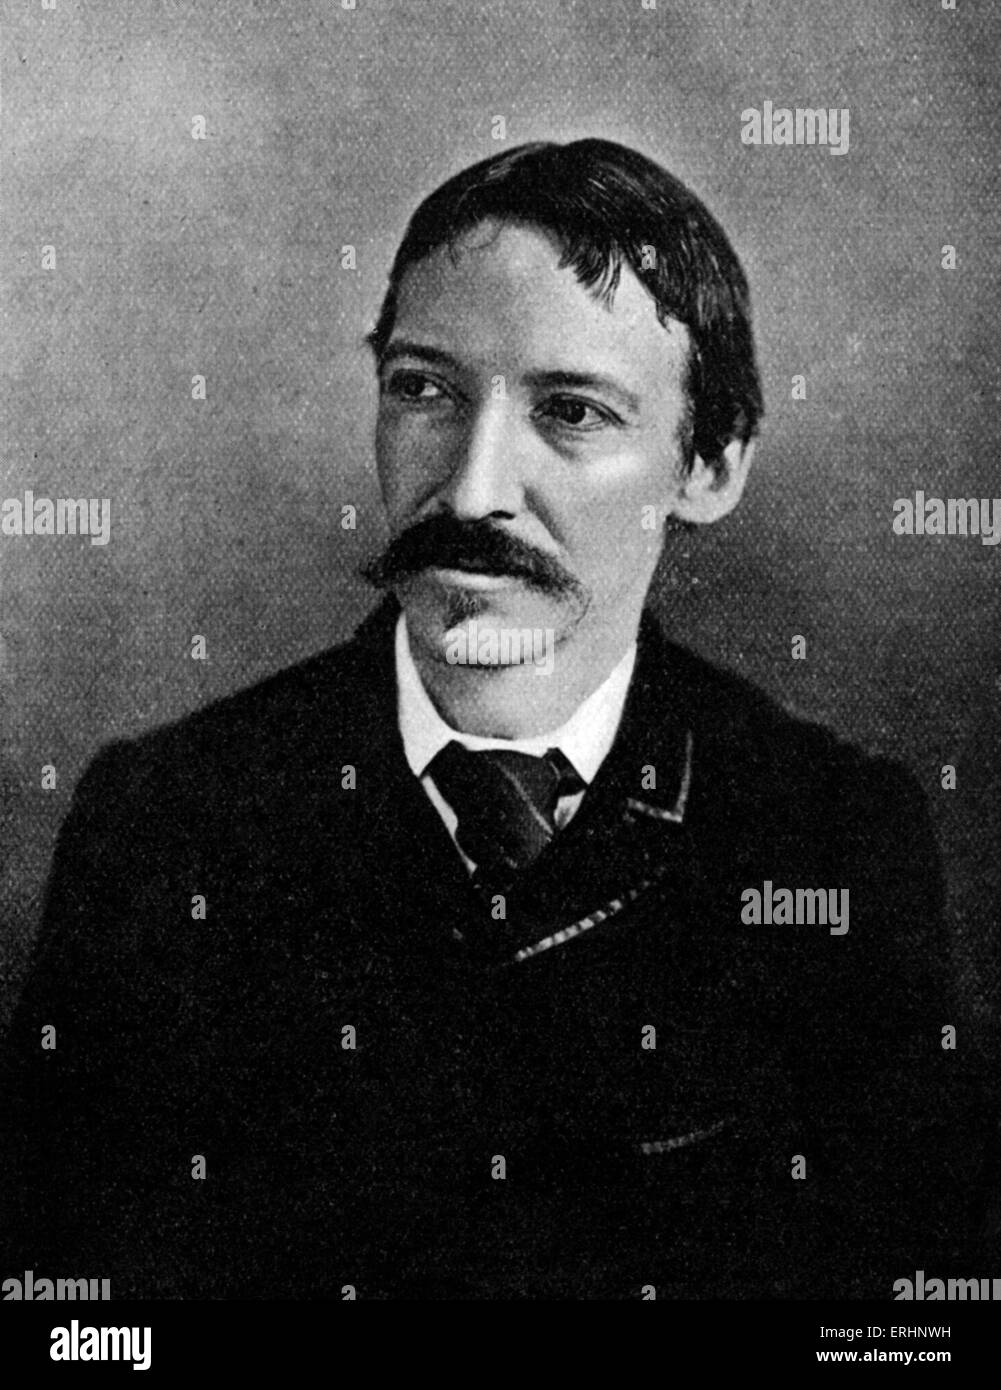 Robert Louis Stevenson - Scottish writer: 13 November 1850 - 3 December 1894. Stock Photo